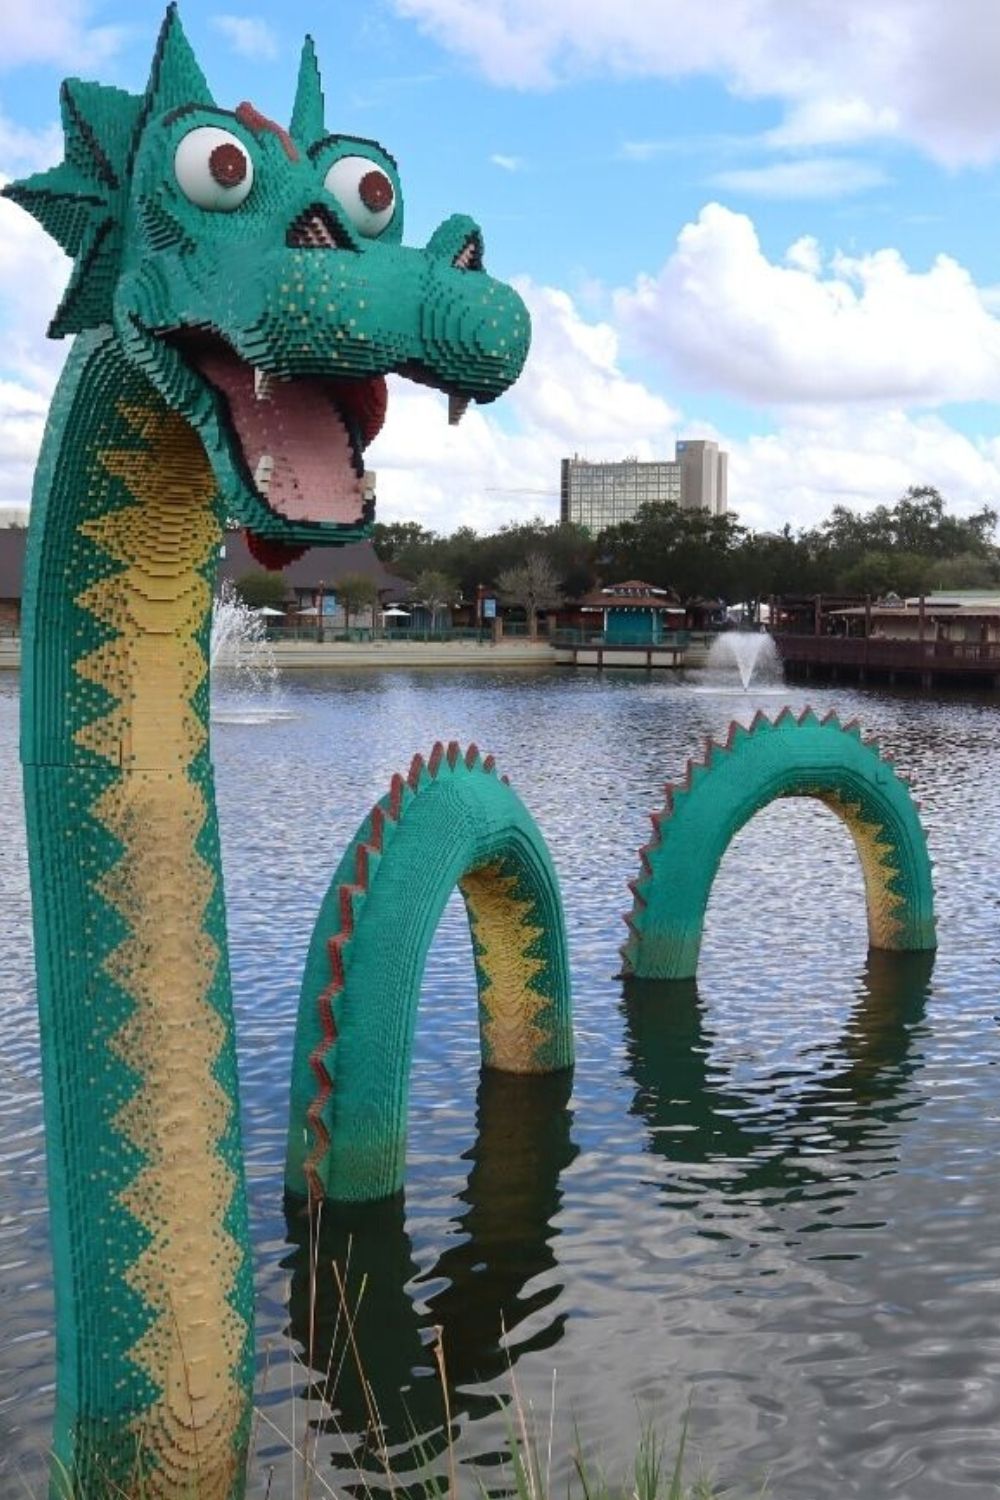 lego sea dragon at Disney Springs in Orlando